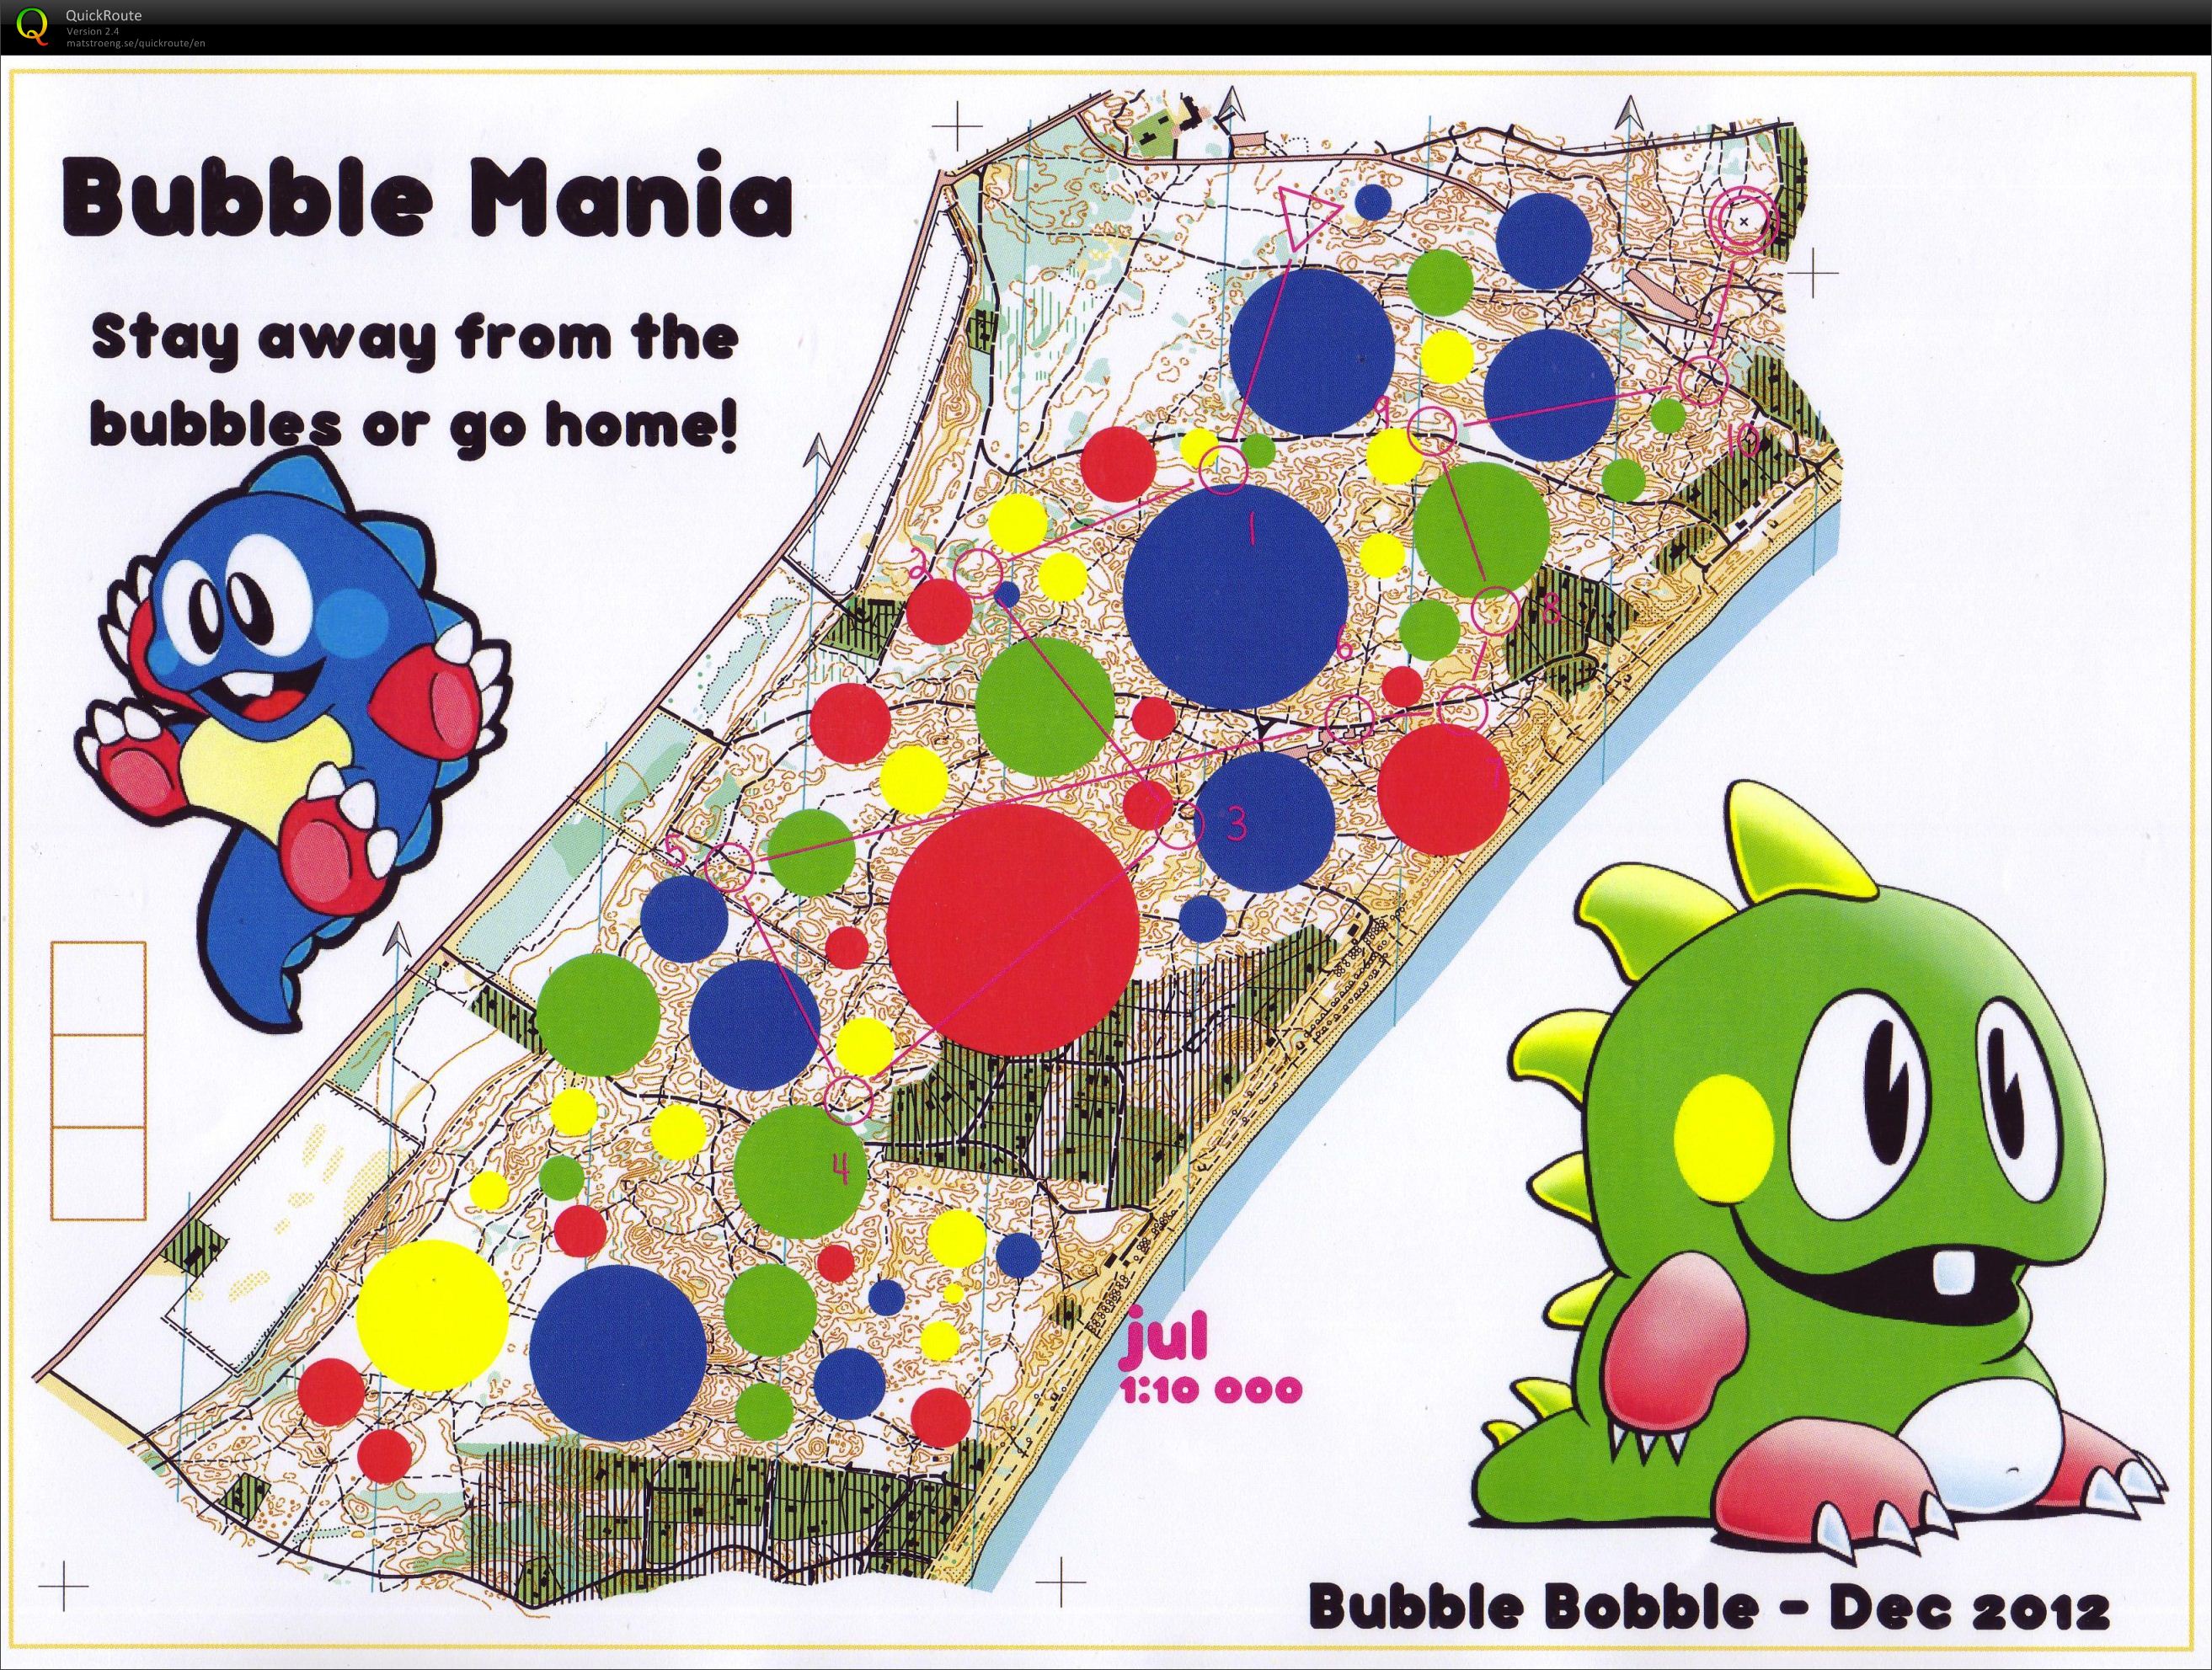 Bubblemania (02.01.2013)